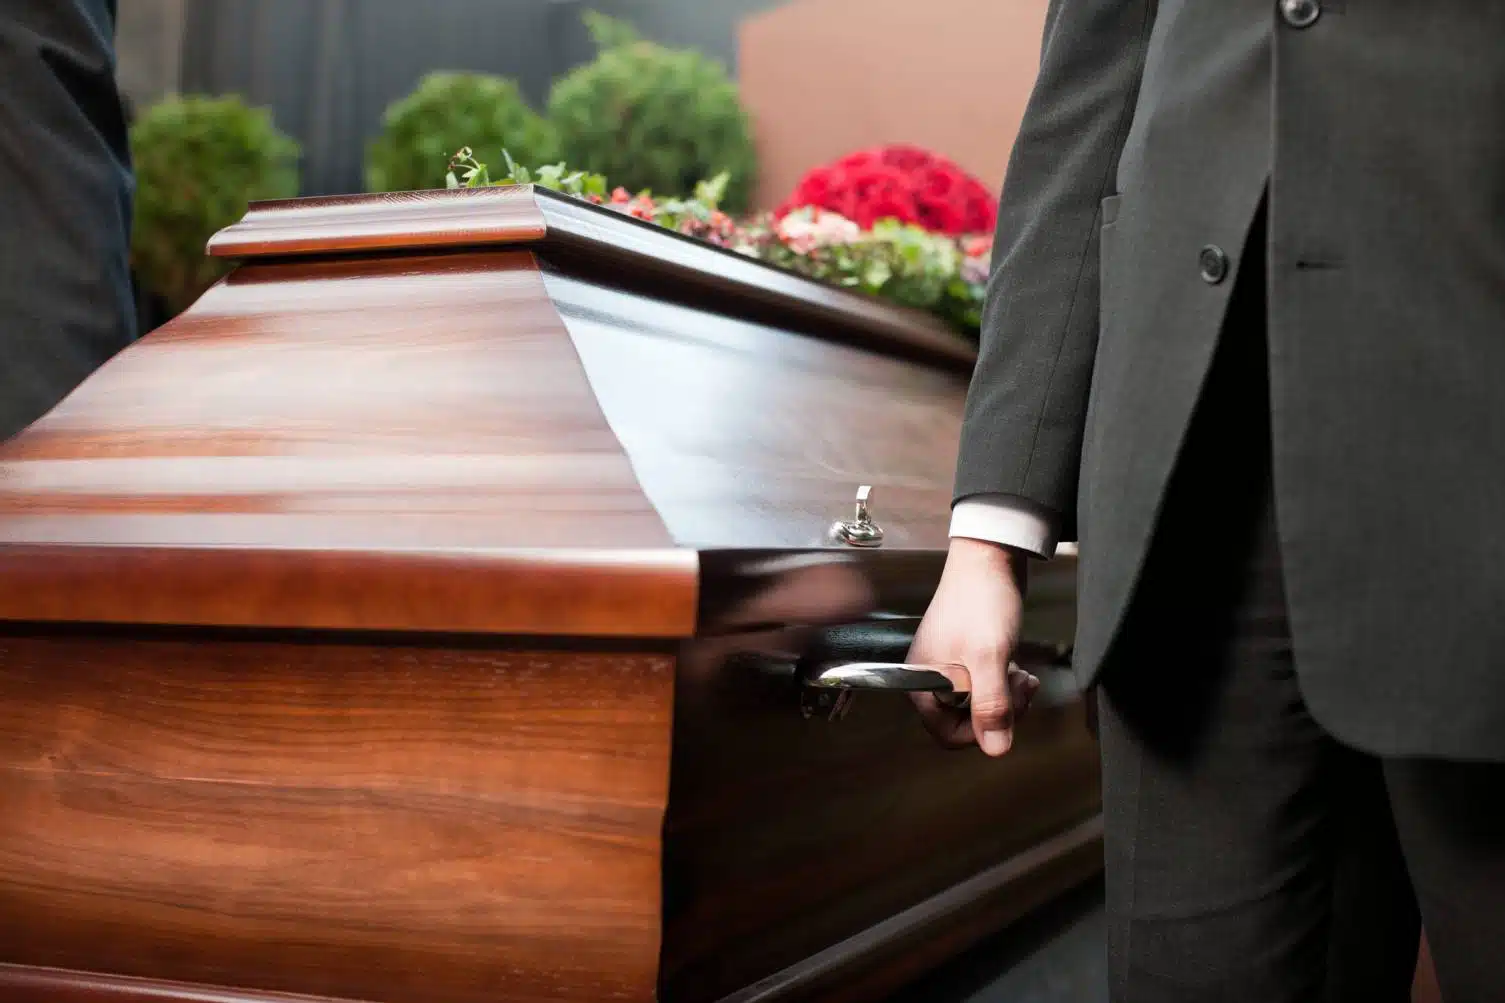 pompes funèbres obsèques funérailles services réseau professionnel agence prévoyance décès